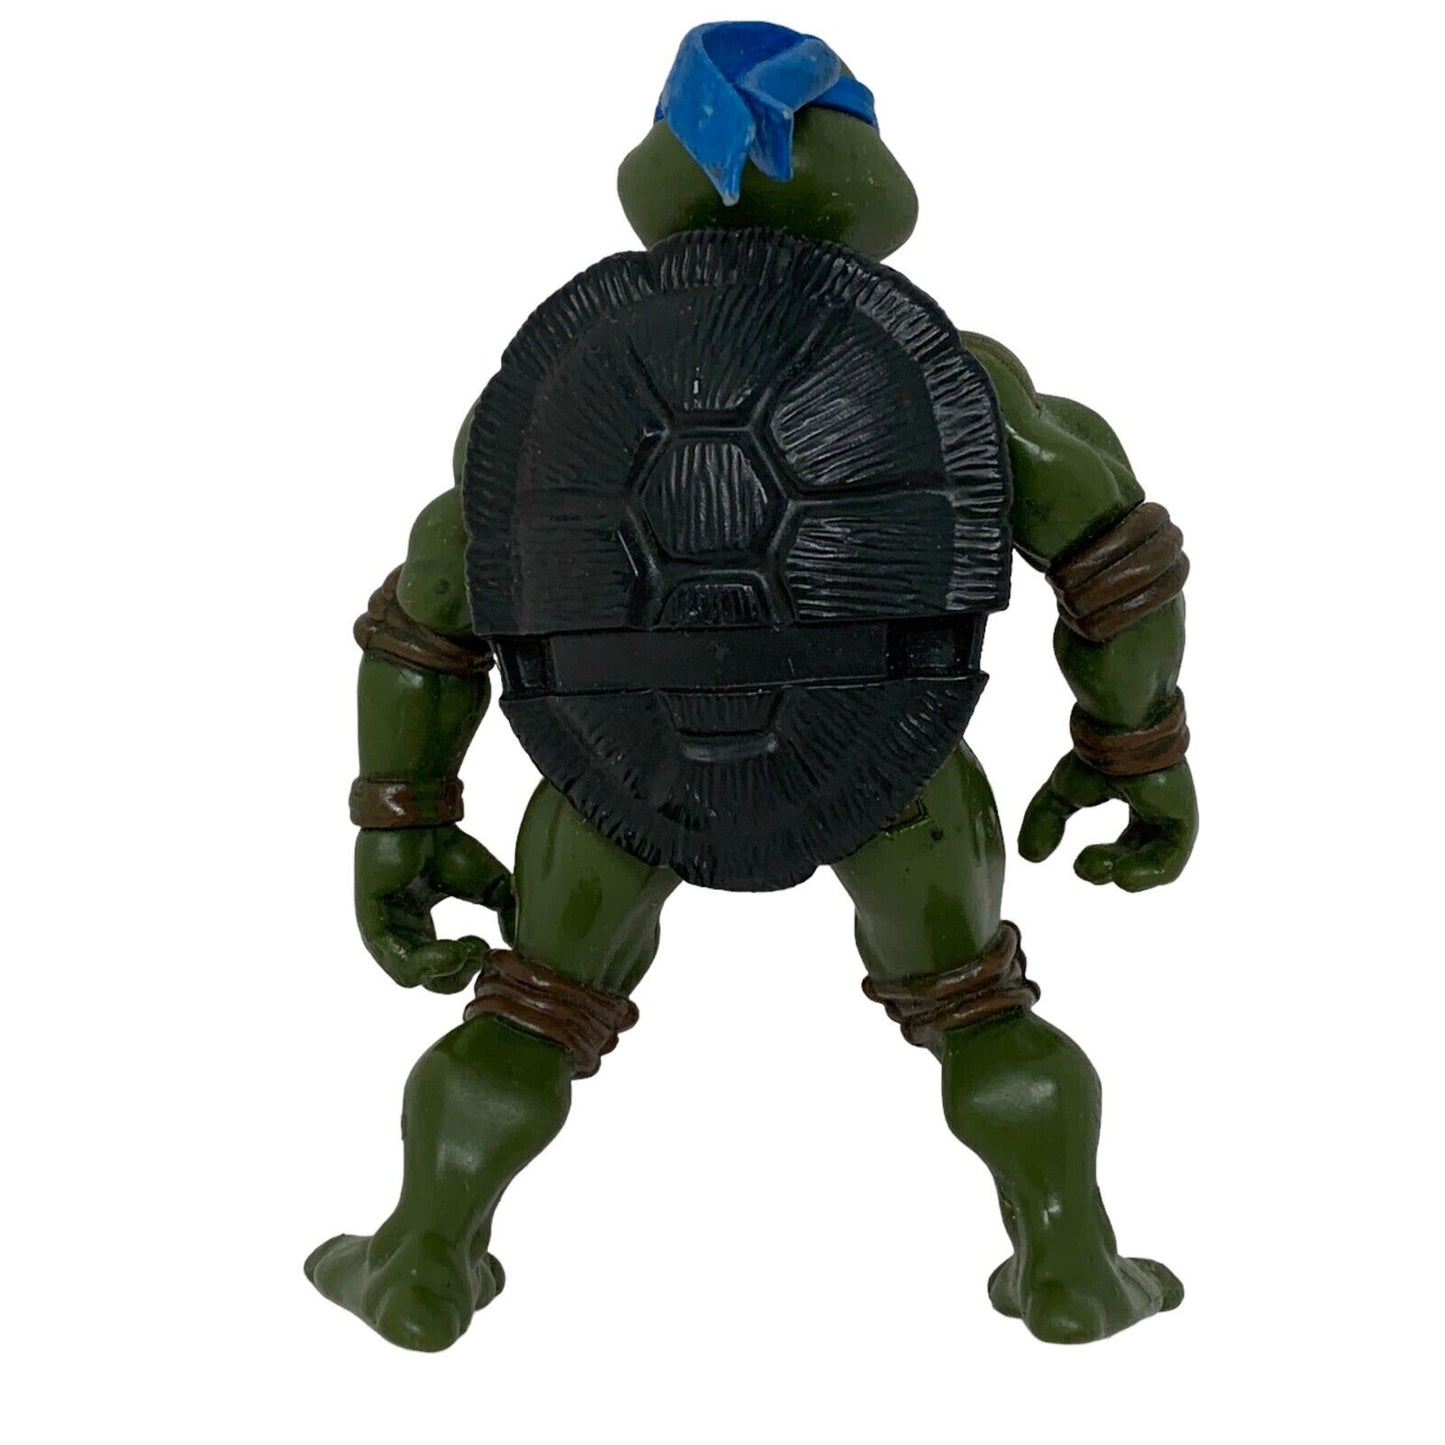 Lot of 5 Vintage Y2Ks TMNT Action Figures Teenage Mutant Ninja Turtles Toys